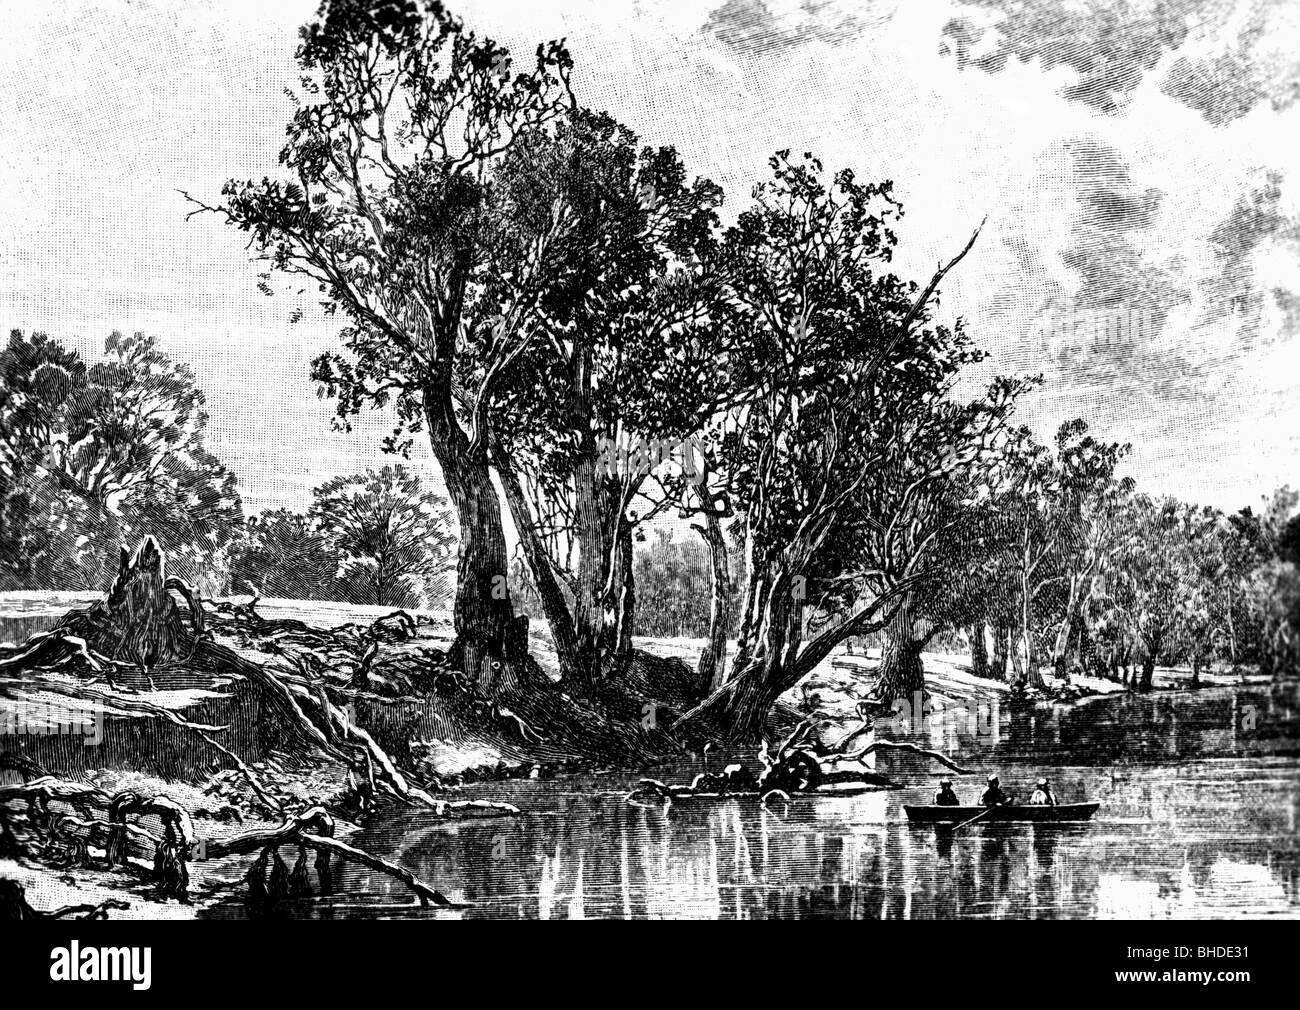 Sturt, Charles, 28.4.1795 - 16.6.1869, explorateur britannique d'Australie, scène, son expédition en 1836, à la Murray River, gravure sur bois, XIXe siècle, Banque D'Images